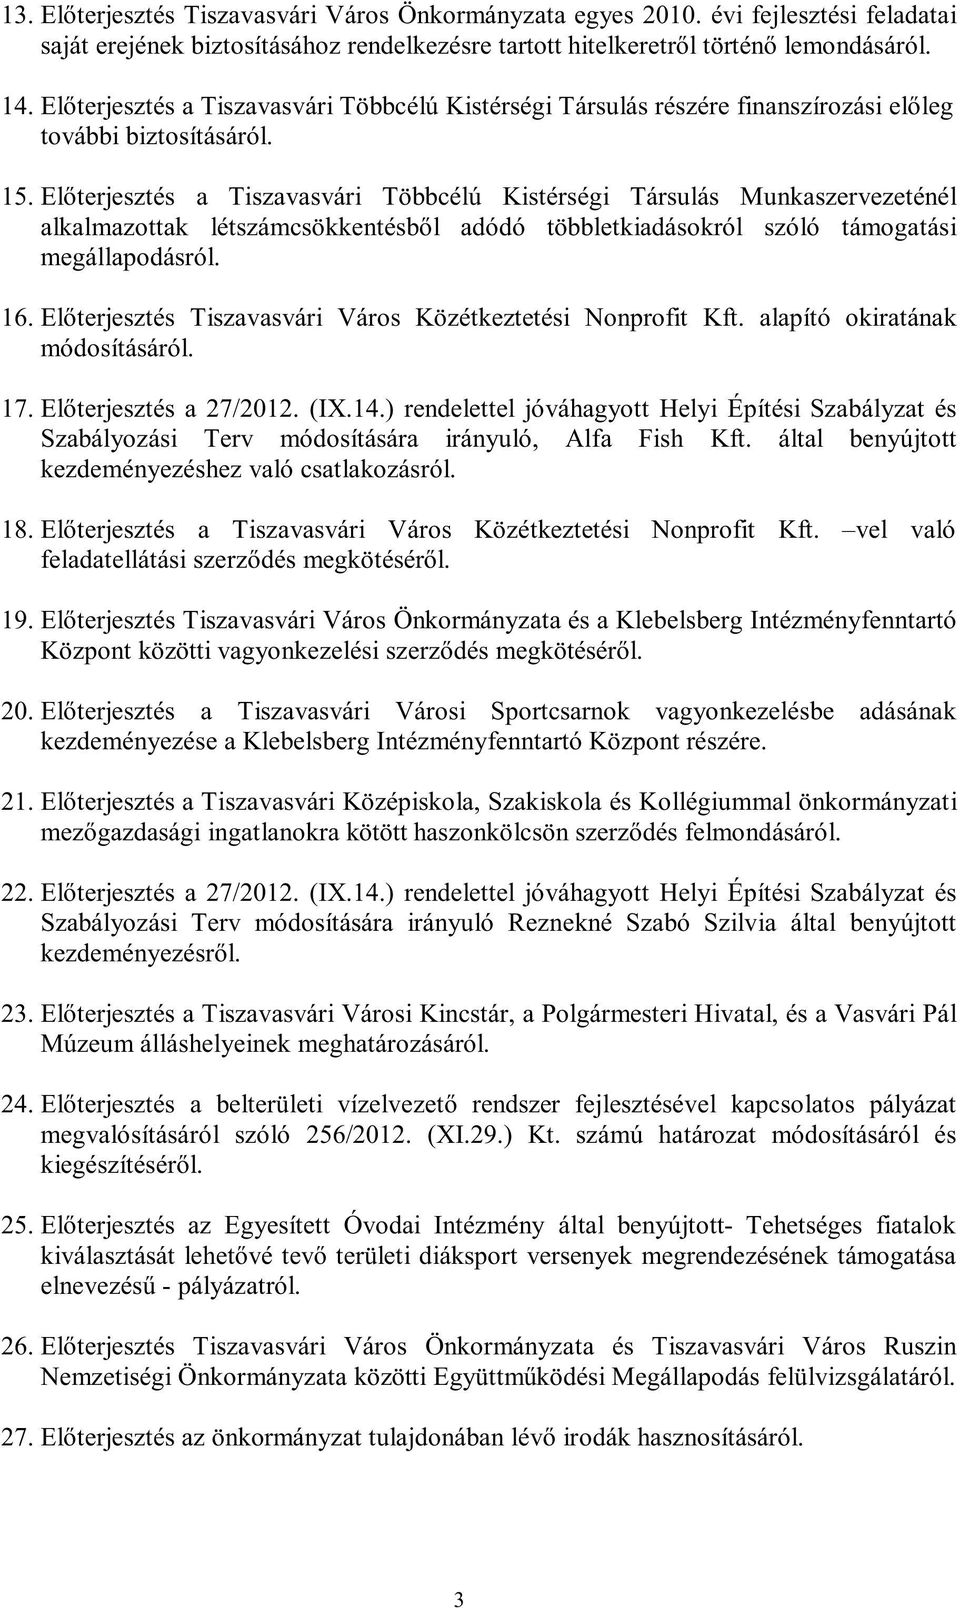 Előterjesztés a Tiszavasvári Többcélú Kistérségi Társulás Munkaszervezeténél alkalmazottak létszámcsökkentésből adódó többletkiadásokról szóló támogatási megállapodásról. 16.